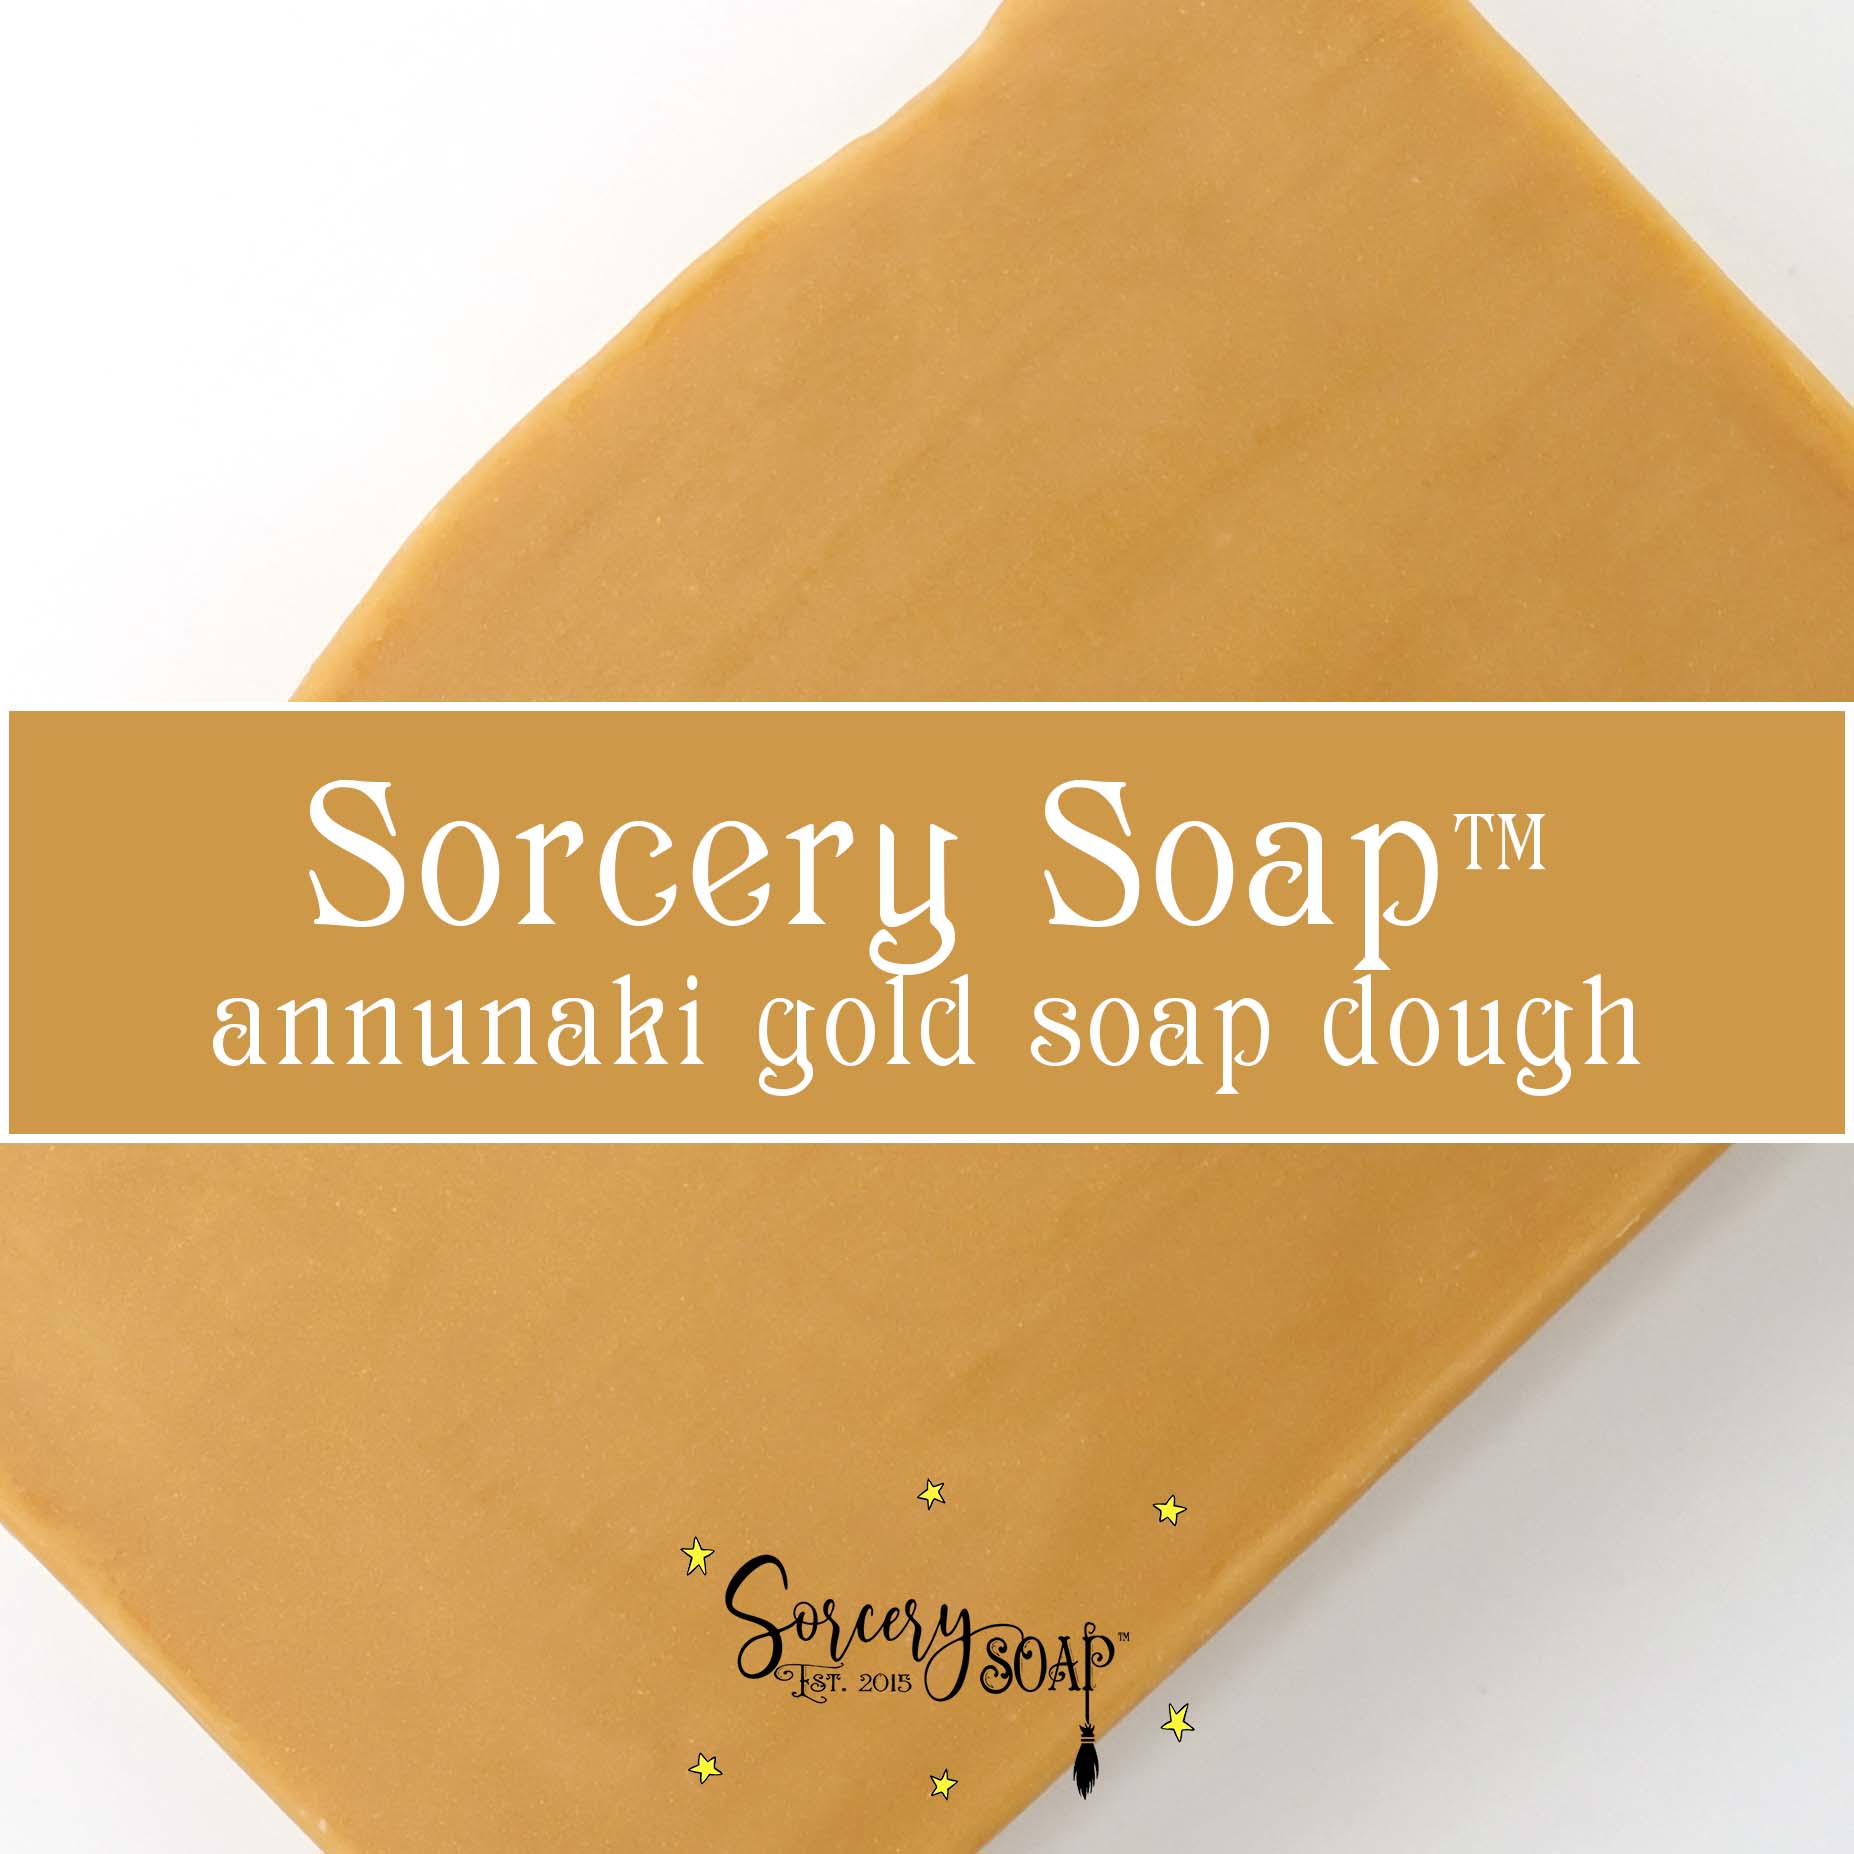 Annunaki Gold Soap Dough